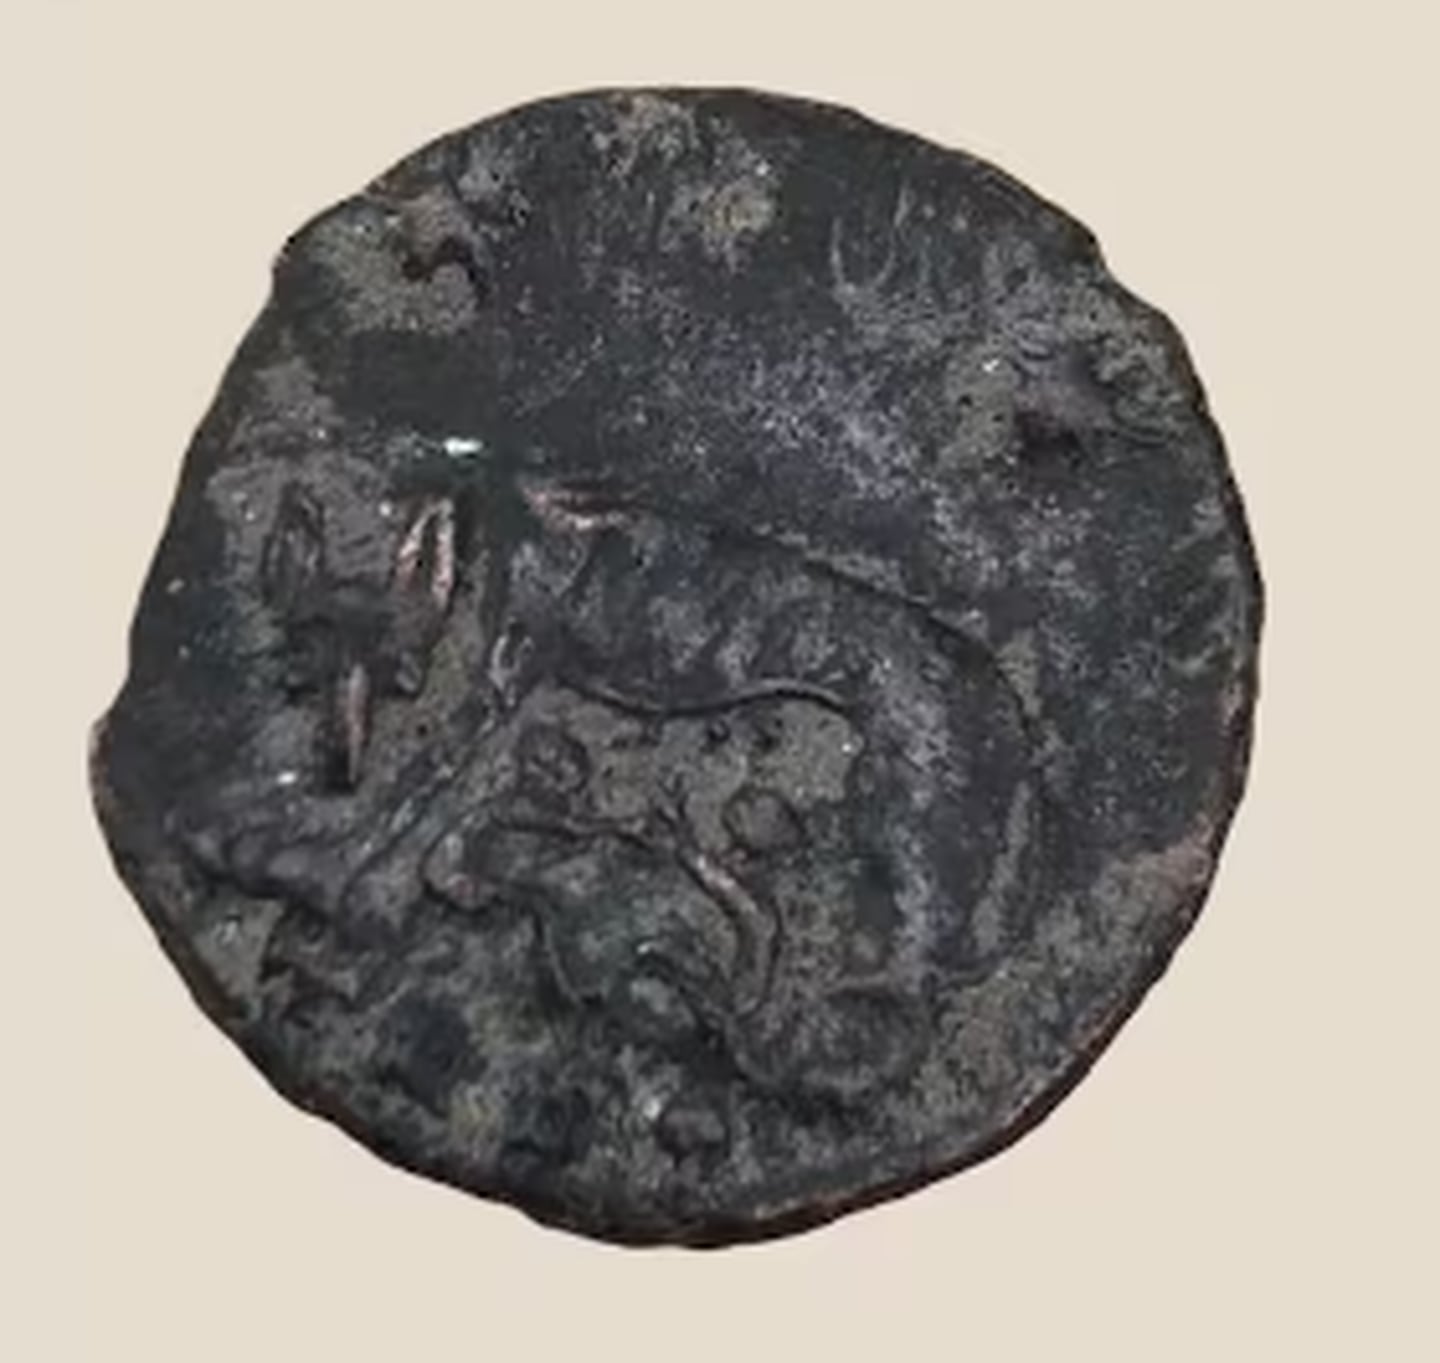 Los arqueólogos también encontraron varias monedas en el lugar, incluida esta que representa el mito romano de Rómulo y Remo siendo amamantados por una loba. (Fuente: INRAP)